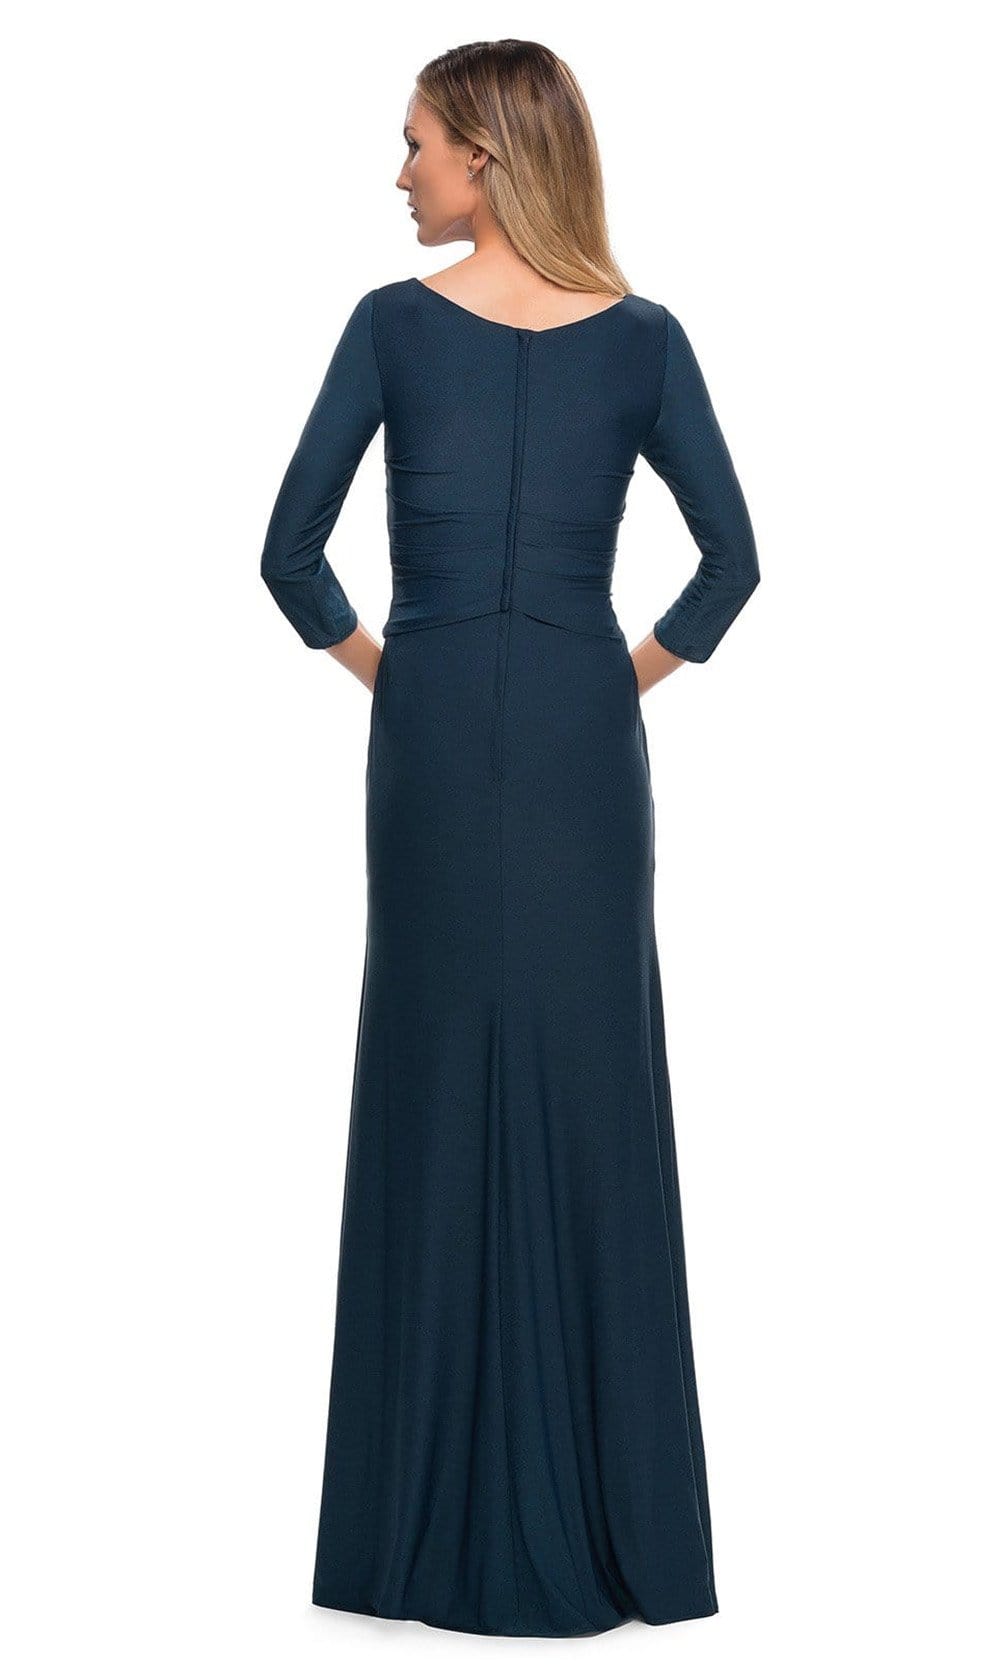 La Femme - 29223 Fitted V-Neck Evening Dress Mother of the Bride Dresses